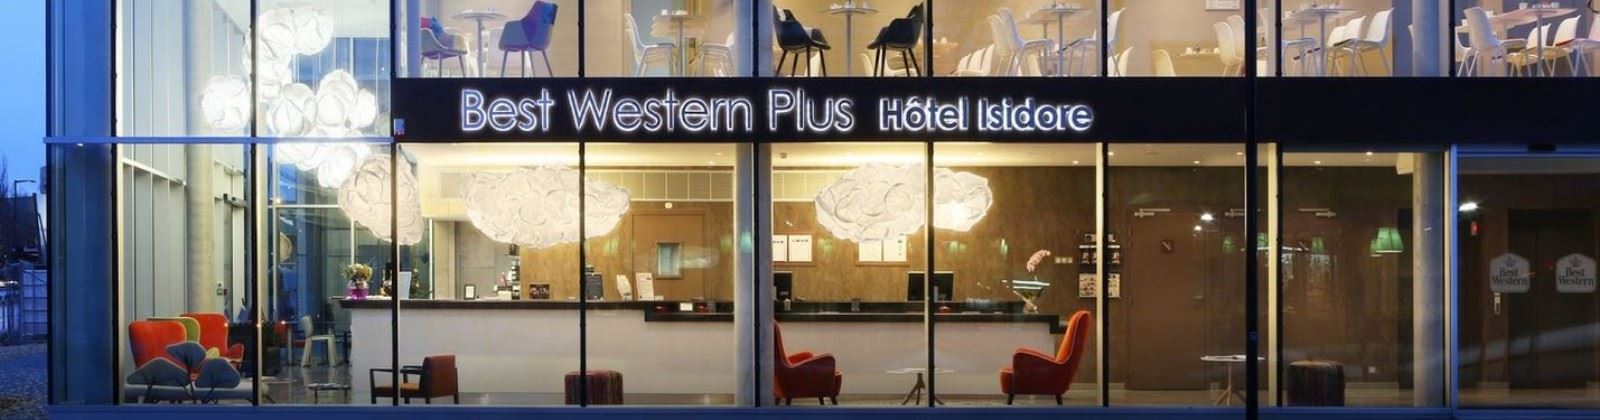 best western plus hotel isidore olevene restaurant seminaires meeting booking 